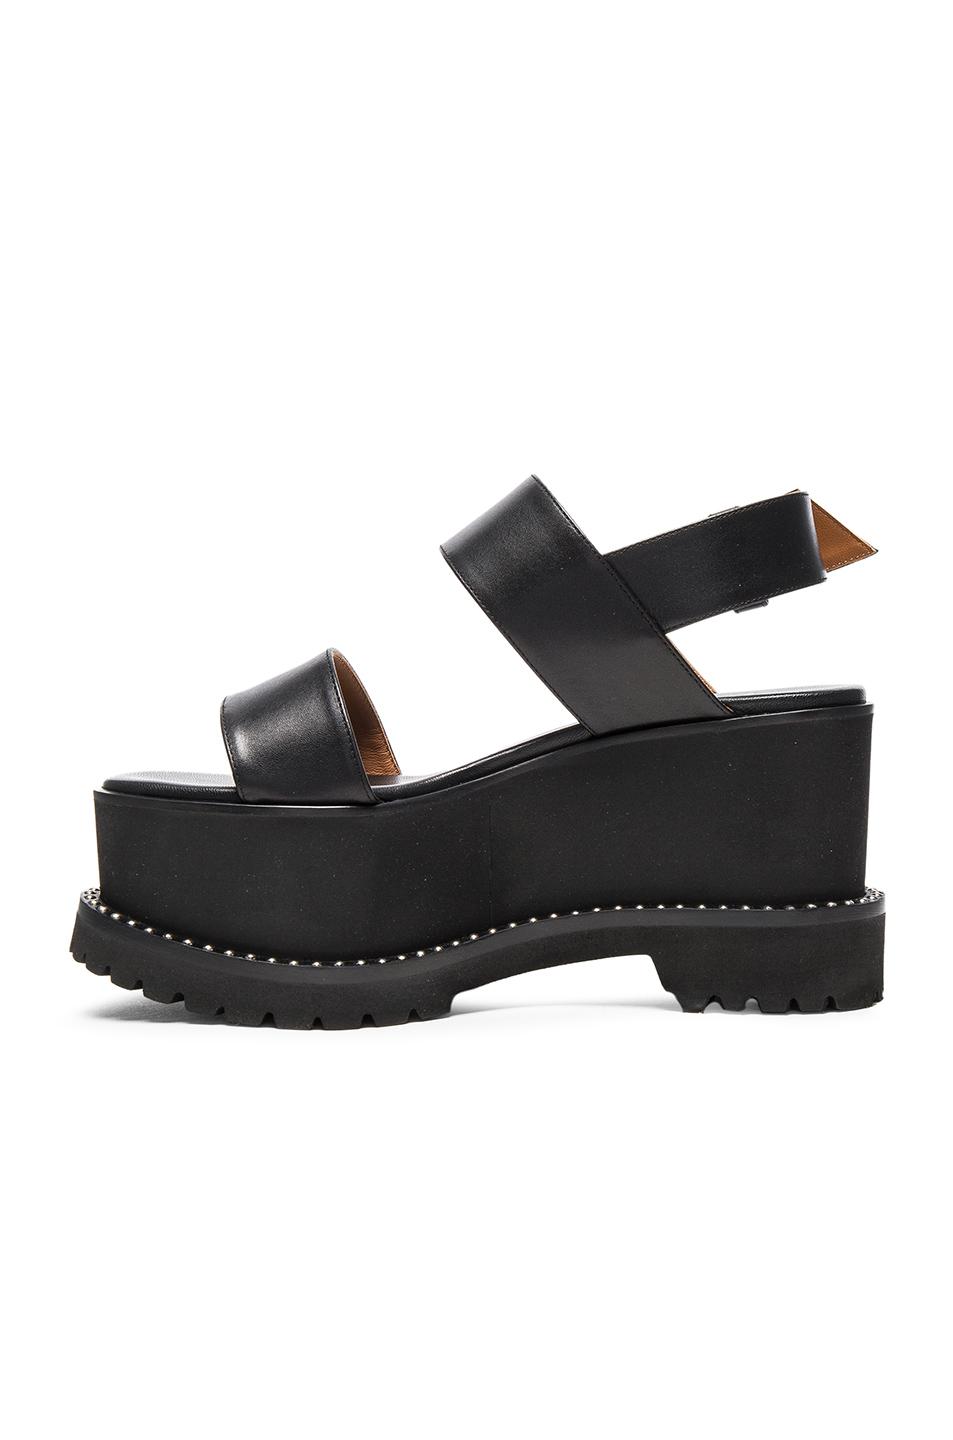 Givenchy Ursa Leather Platform Slingback Sandals In Black | ModeSens